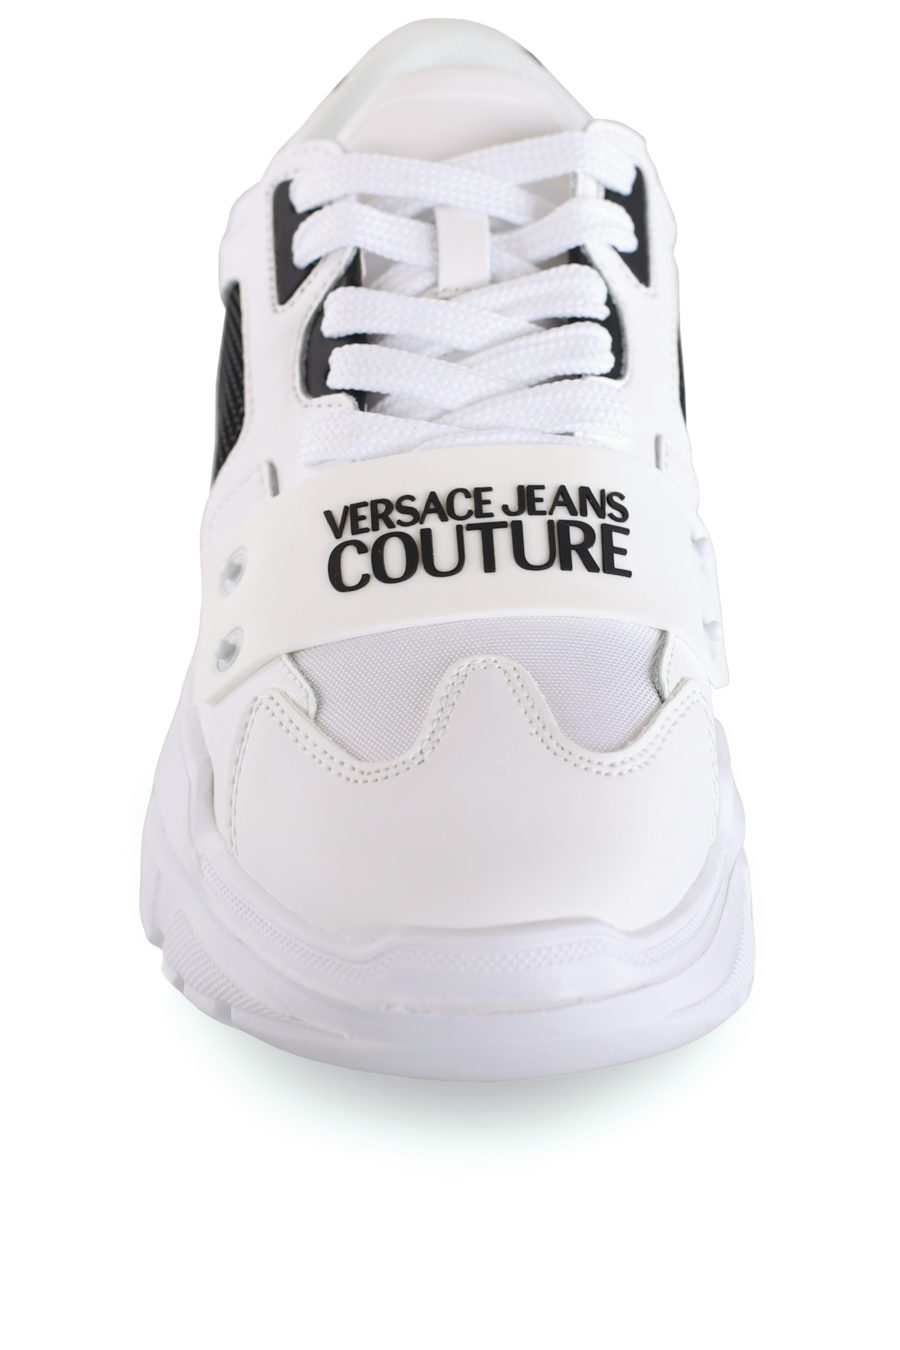 Zapatillas blancas con logotipo engomado - IMG 8469 copia